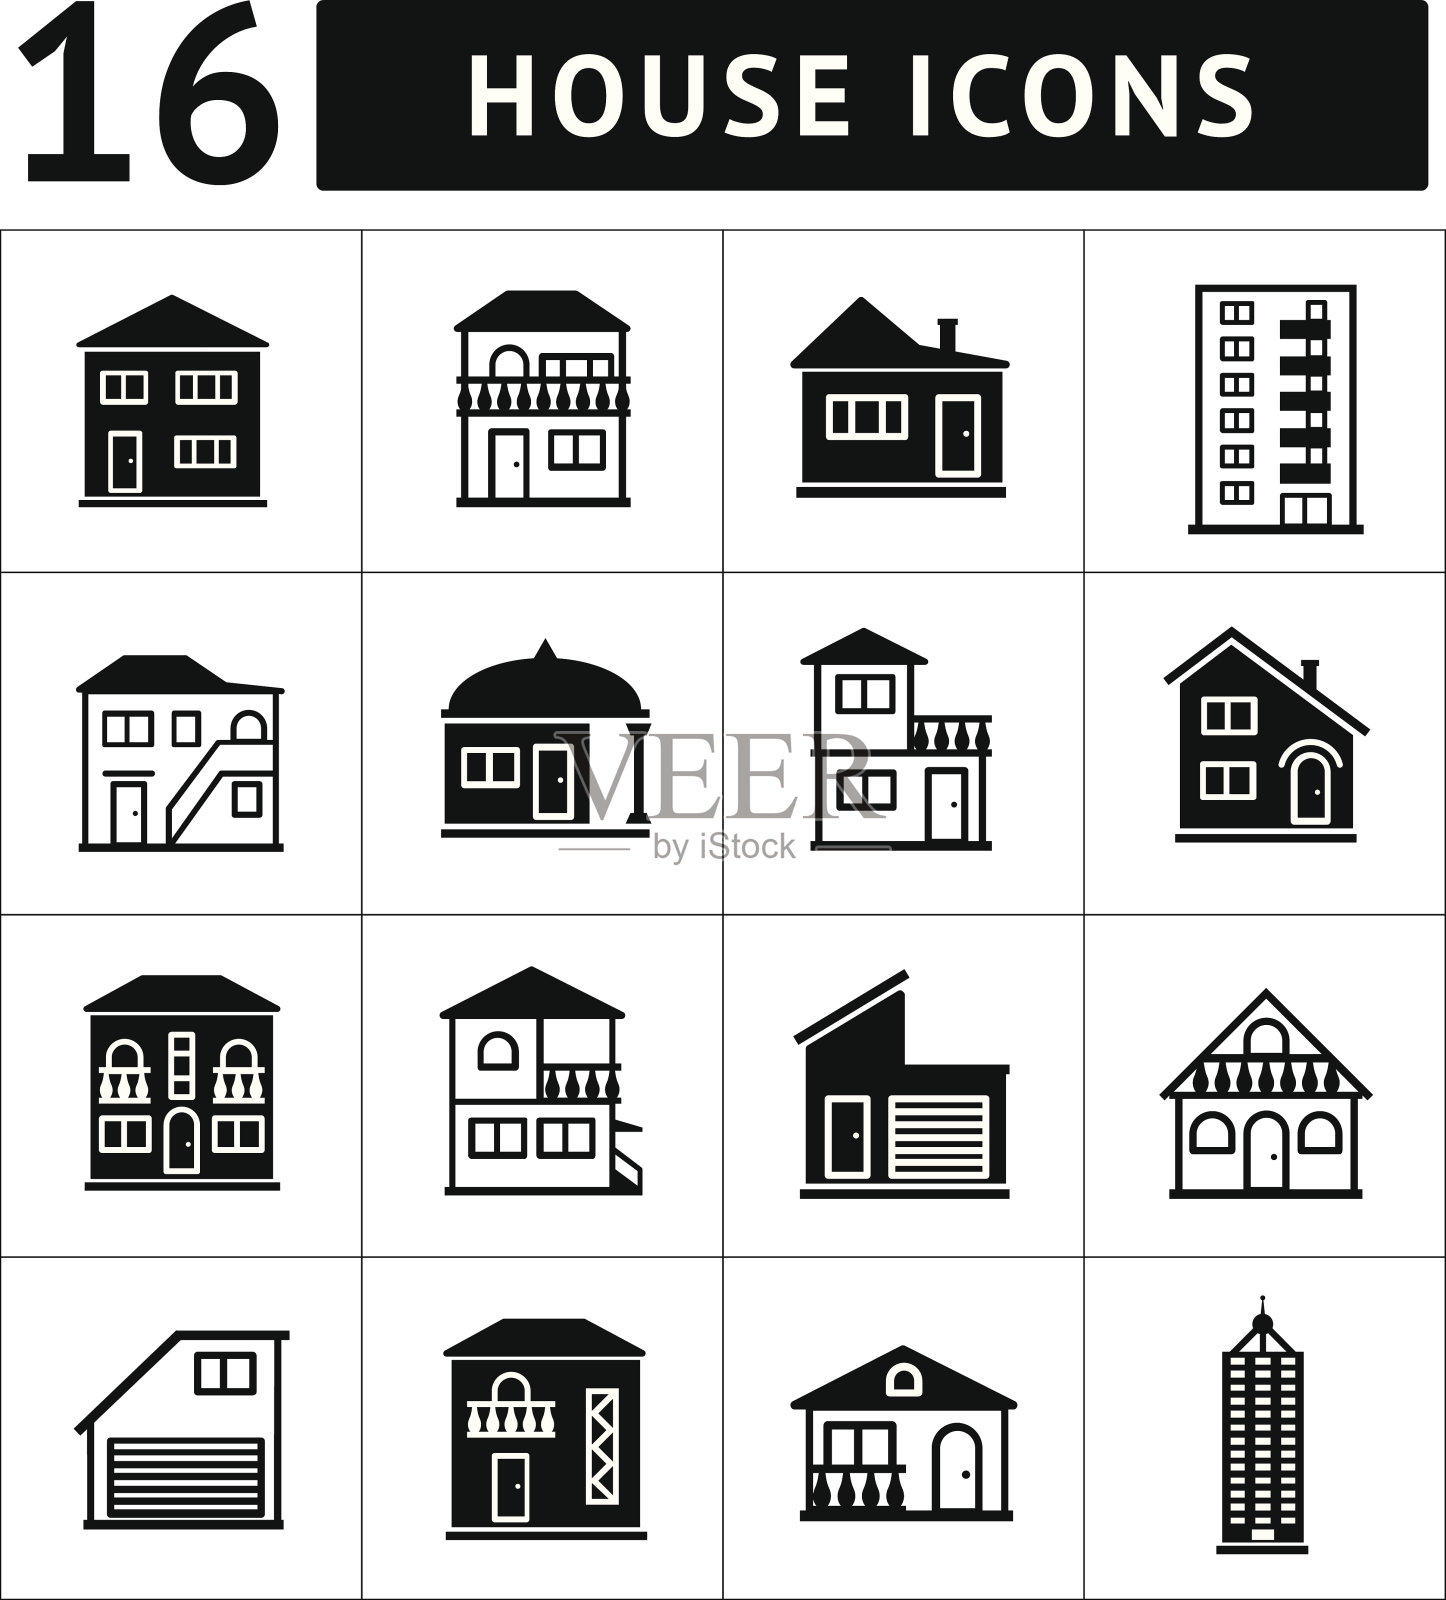 一套房子图标。房地产及建筑收藏图标素材